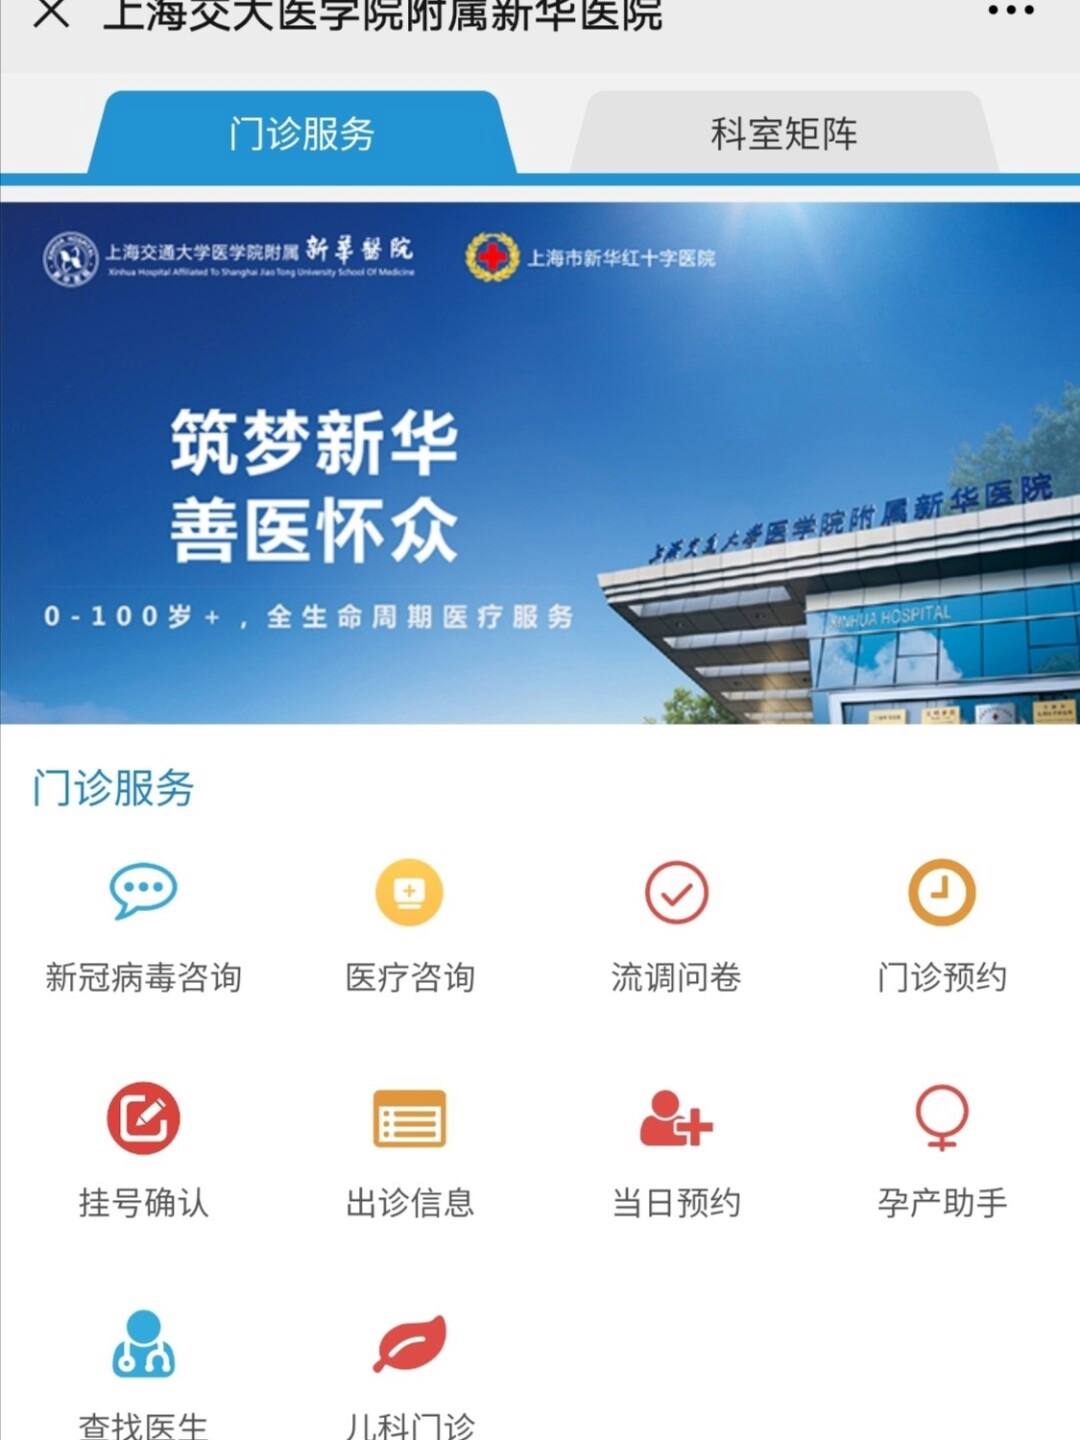 关于上海市光华中西医结合医院医院黄牛挂号，京医指导就医分享的信息